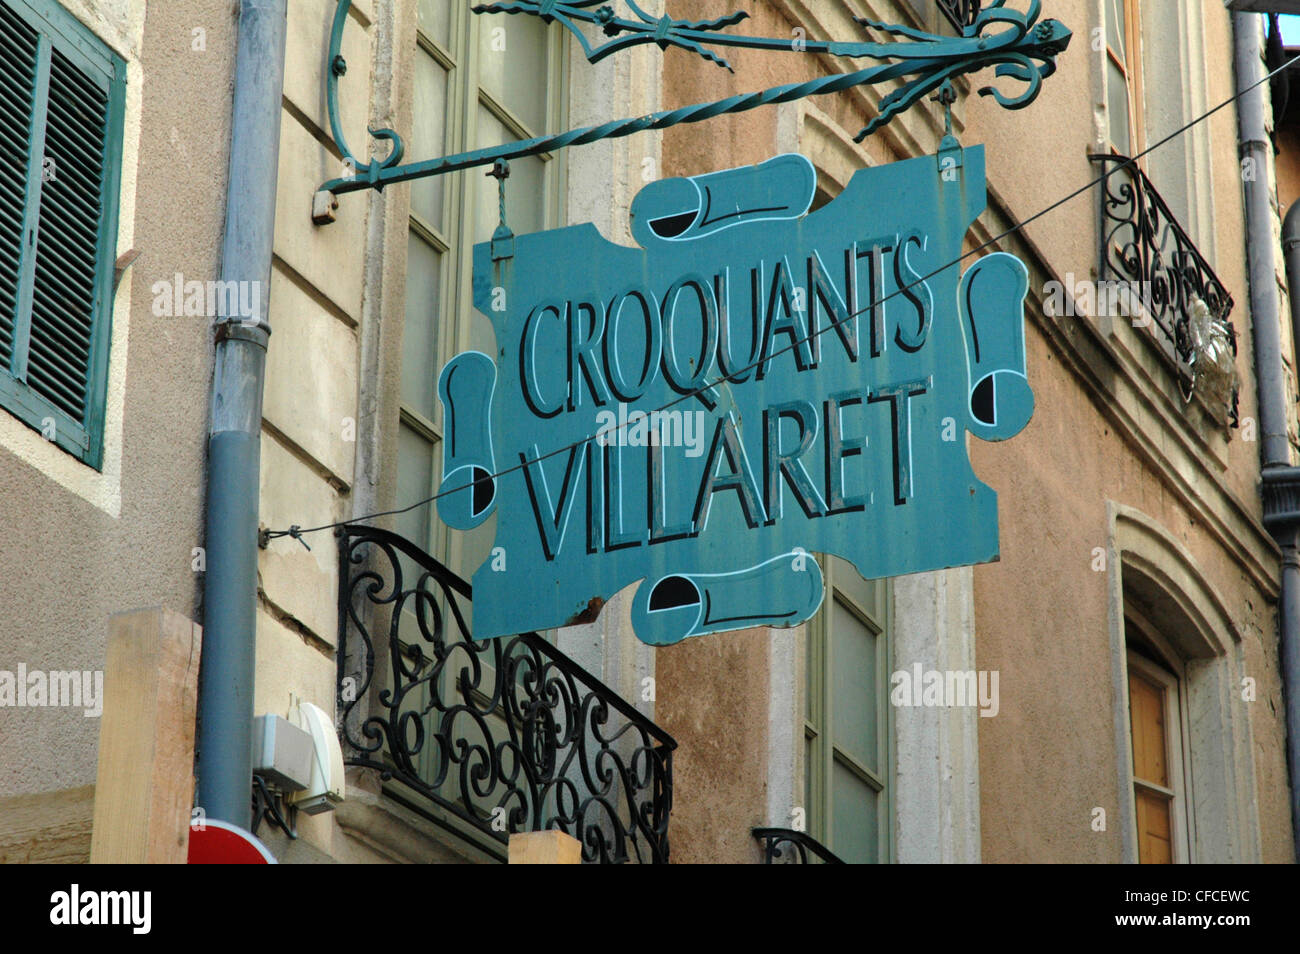 CROQUANTS VILLARET un discreto y elegante tienda firmar en Nimes FRANCIA Foto de stock